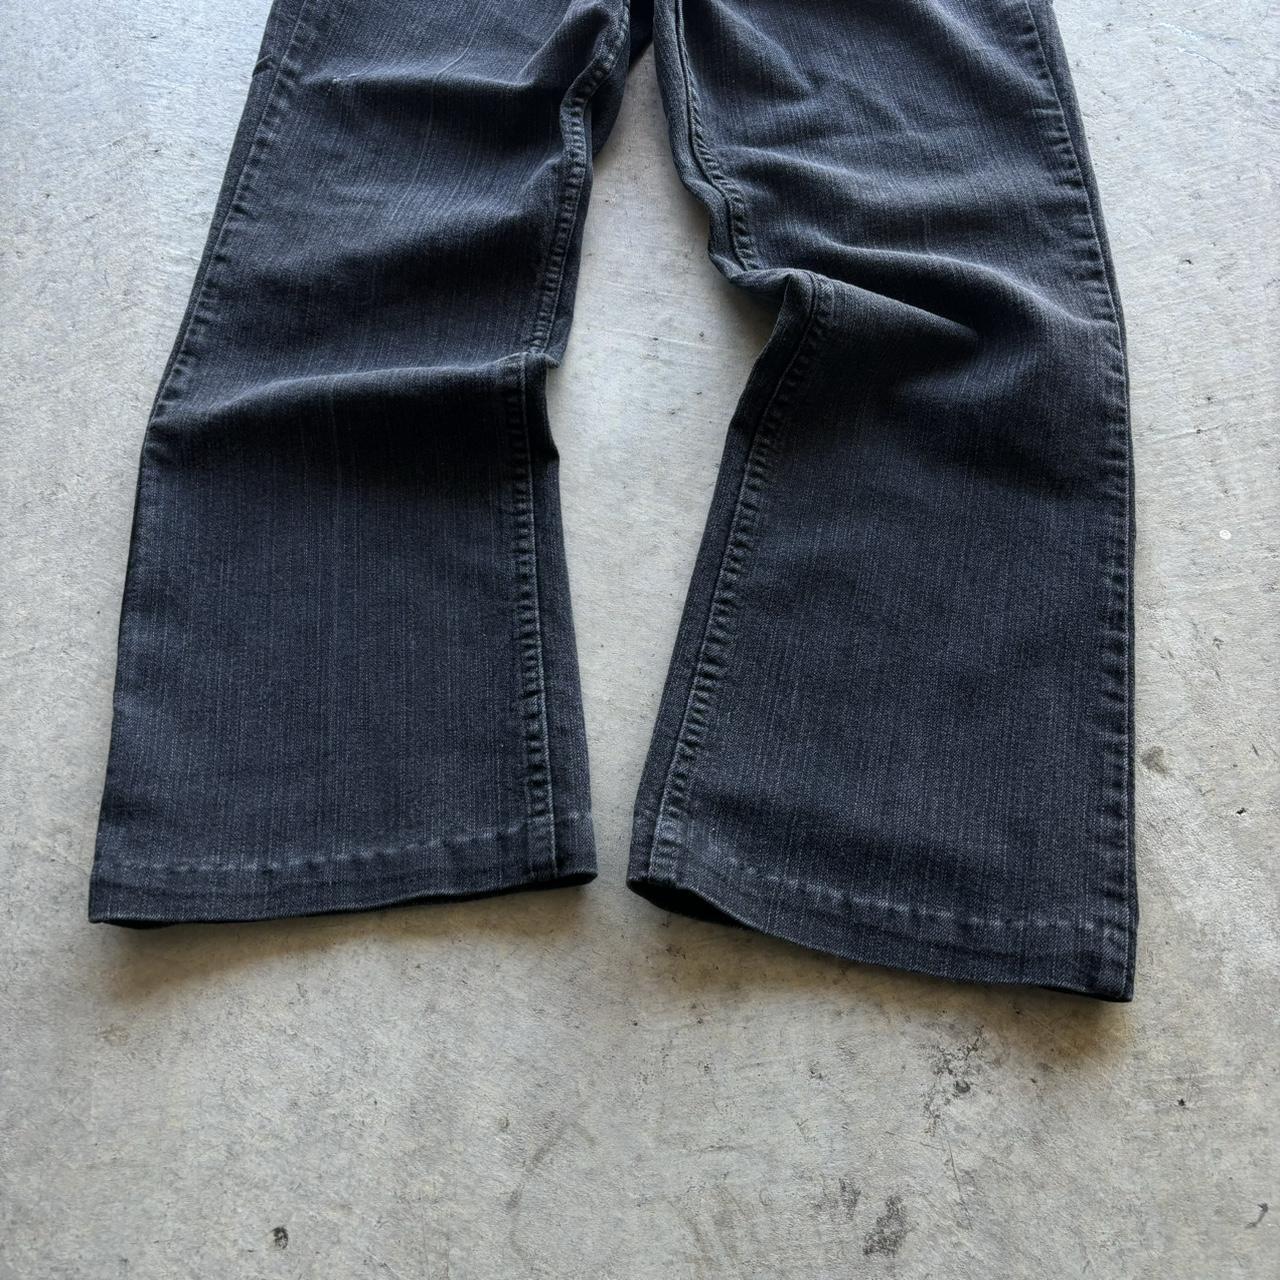 Vintage black flared jeans Perfect black flared... - Depop